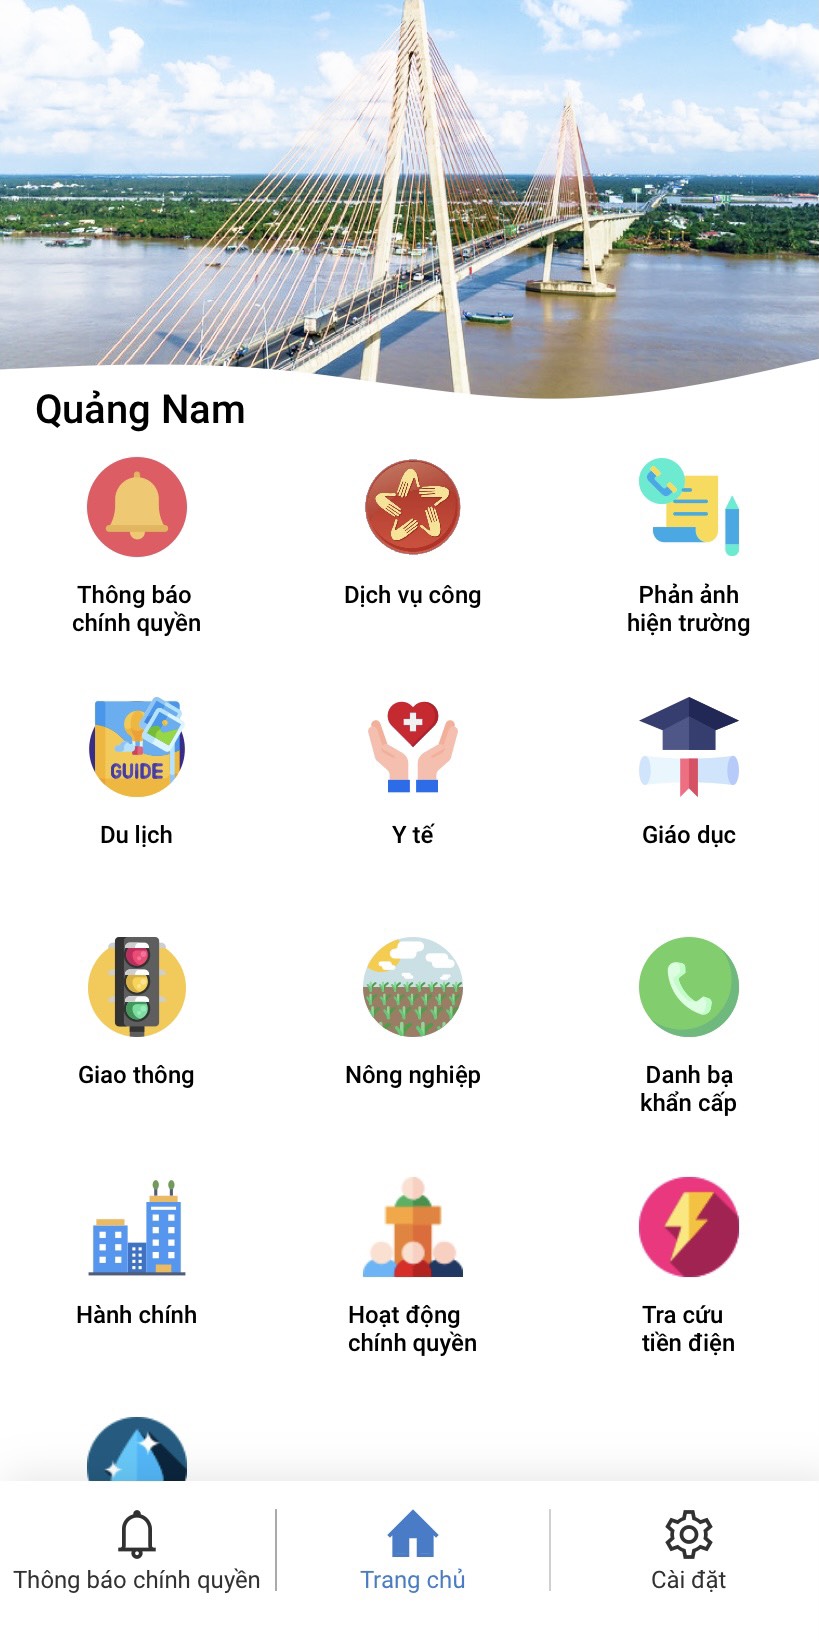 Tỉnh Quảng Nam đã triển khai Ứng dụng “Smart Quang Nam”.